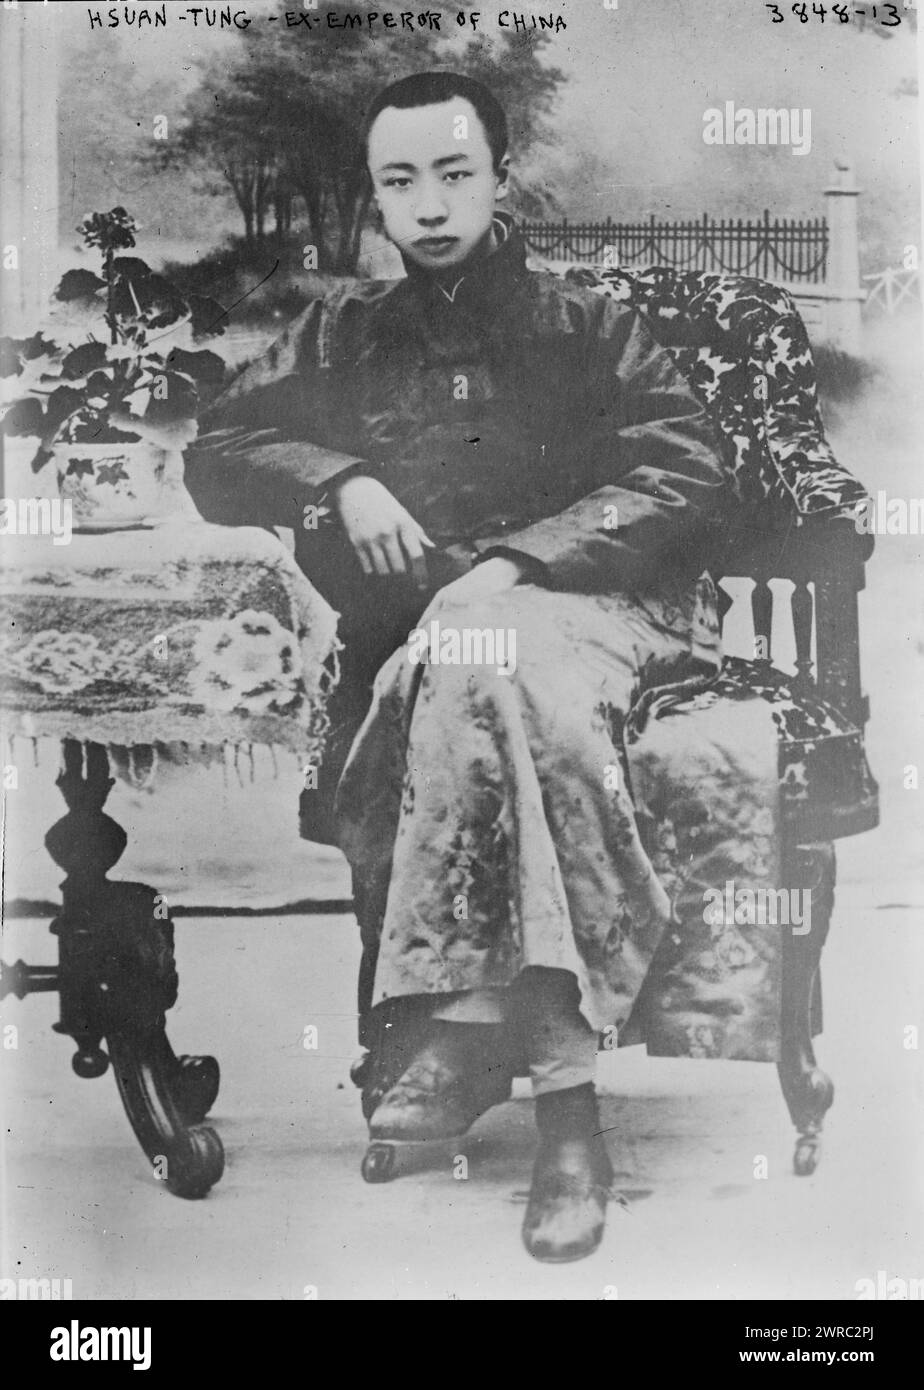 Hsuan-Tung, ex-imperatore della Cina, la fotografia mostra Aisin-Gioro Puyi (1906-1967), noto come Puyi, l'ultimo imperatore della Cina che governò dal 1908 al 1912., tra il 1879 e il 1879 circa. 1915 e ca. 1920, Glass negative, 1 negativo: Glass Foto Stock